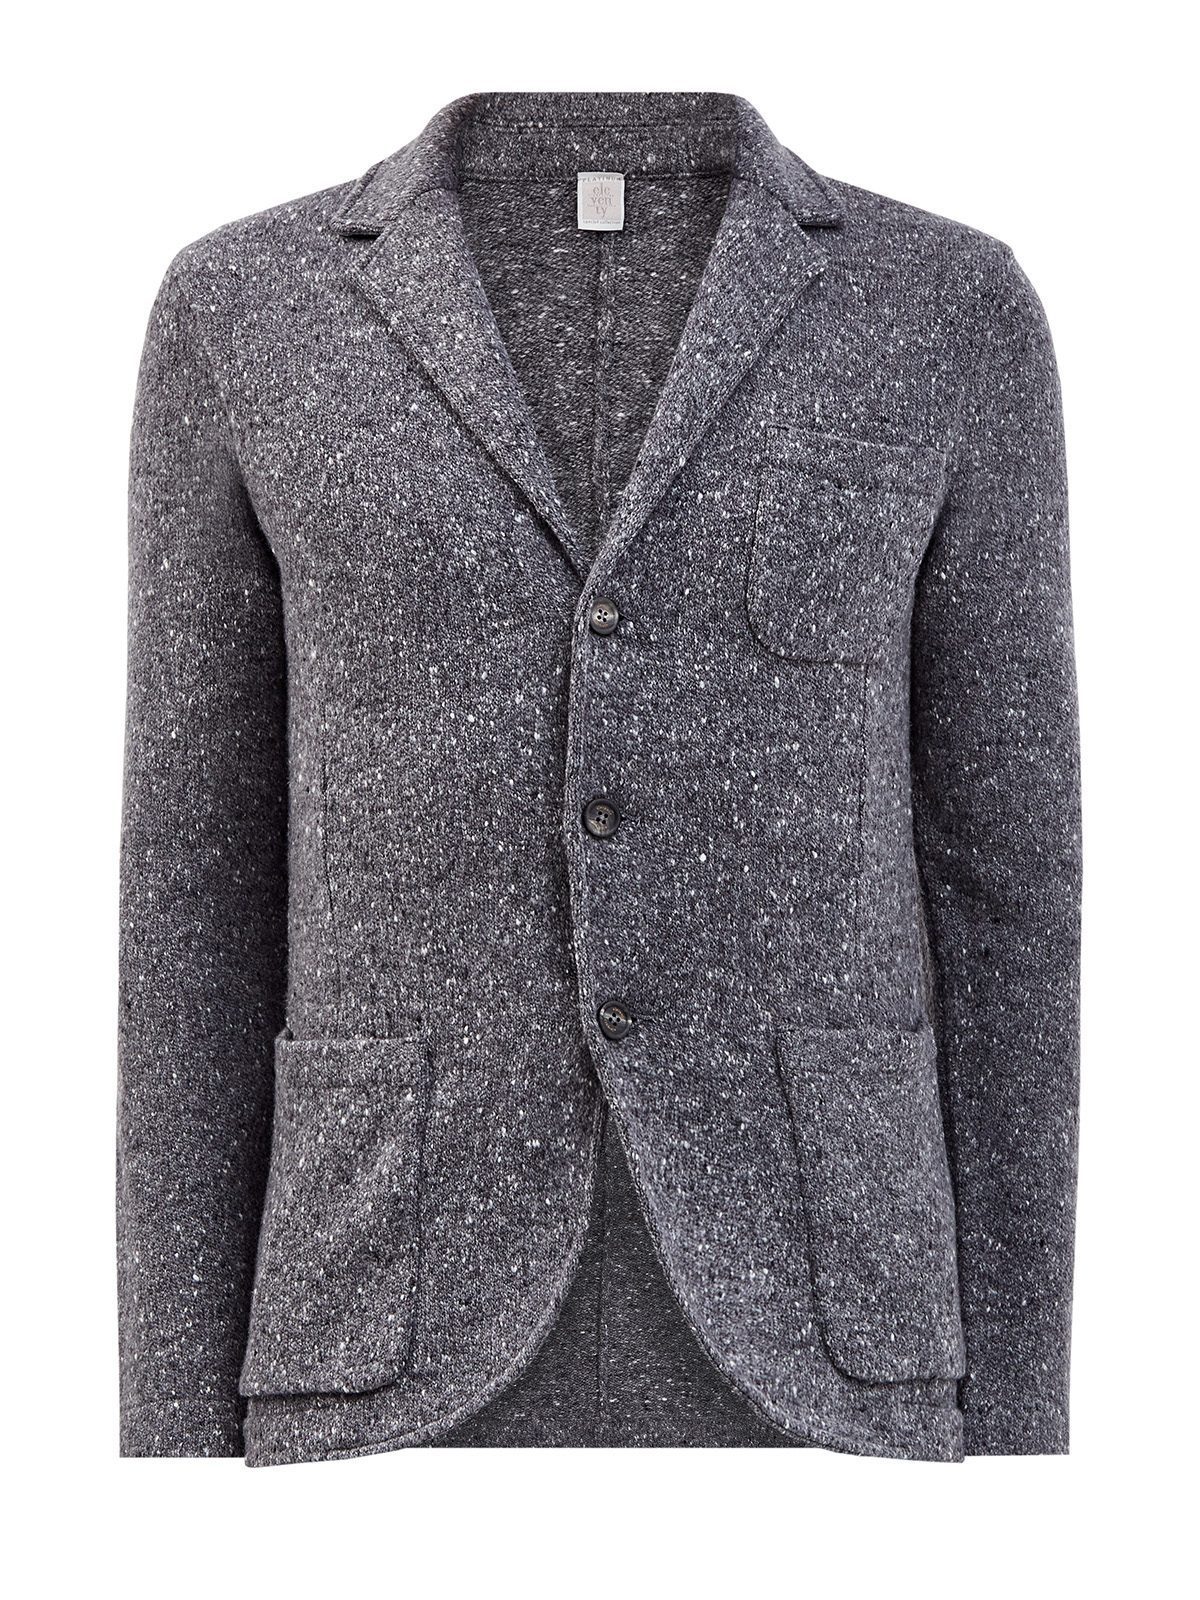 Меланжевый пиджак в стиле casual из шерсти и кашемира ELEVENTY, цвет серый, размер 48;52;54;56